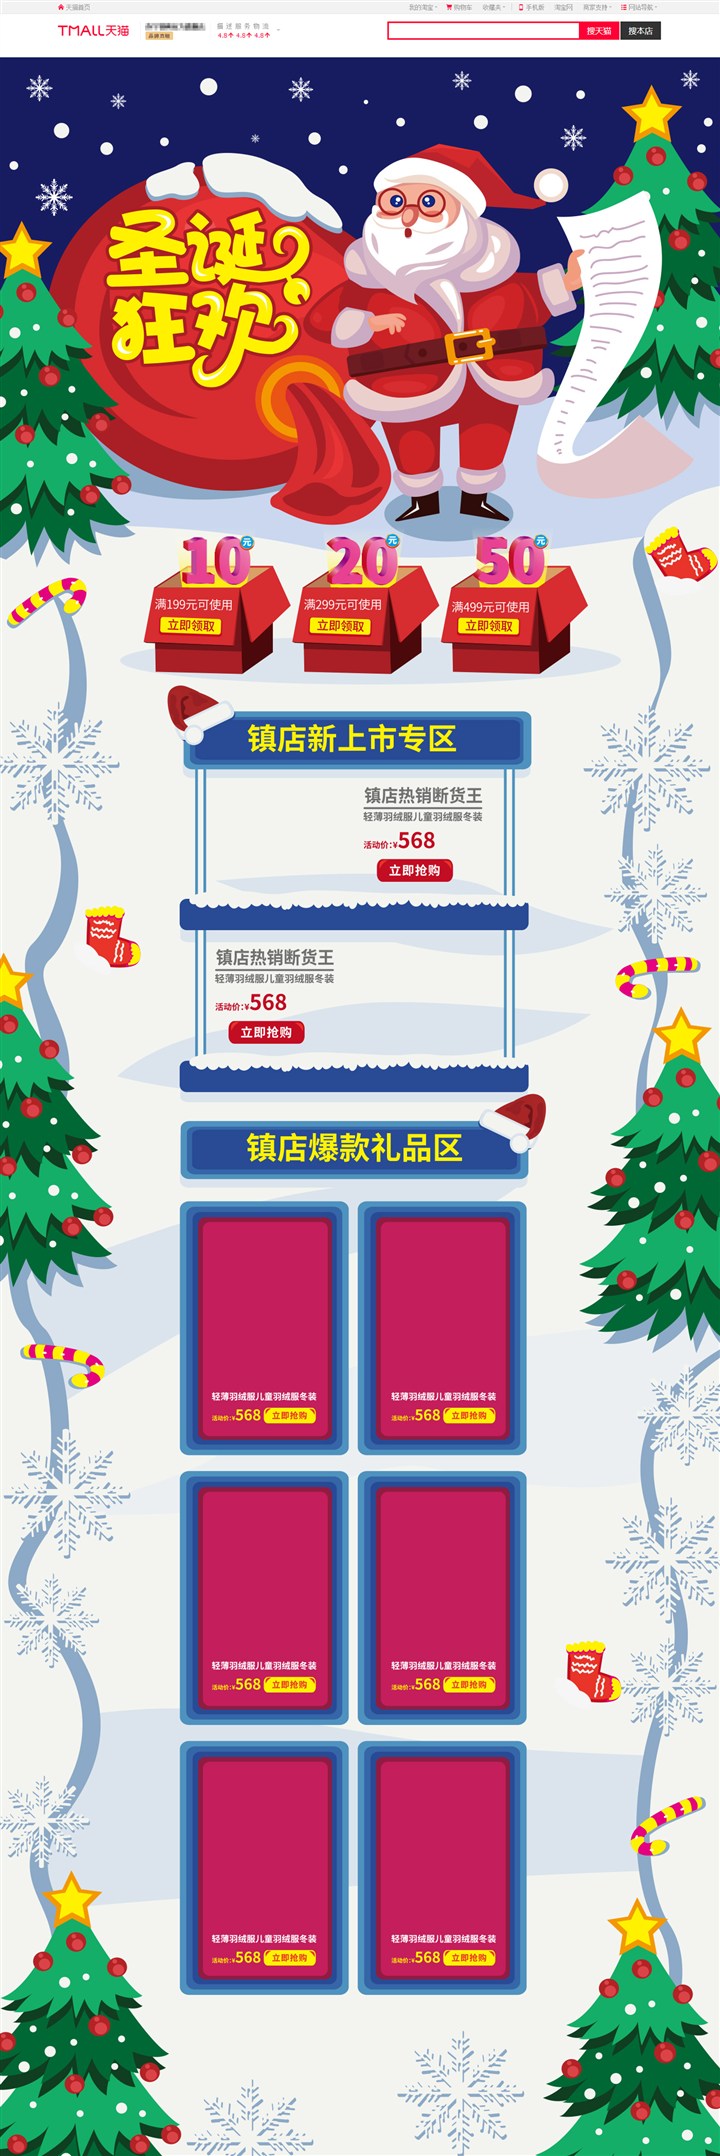 AI淘宝天猫京东插画手绘风格圣诞狂欢促销首页模板